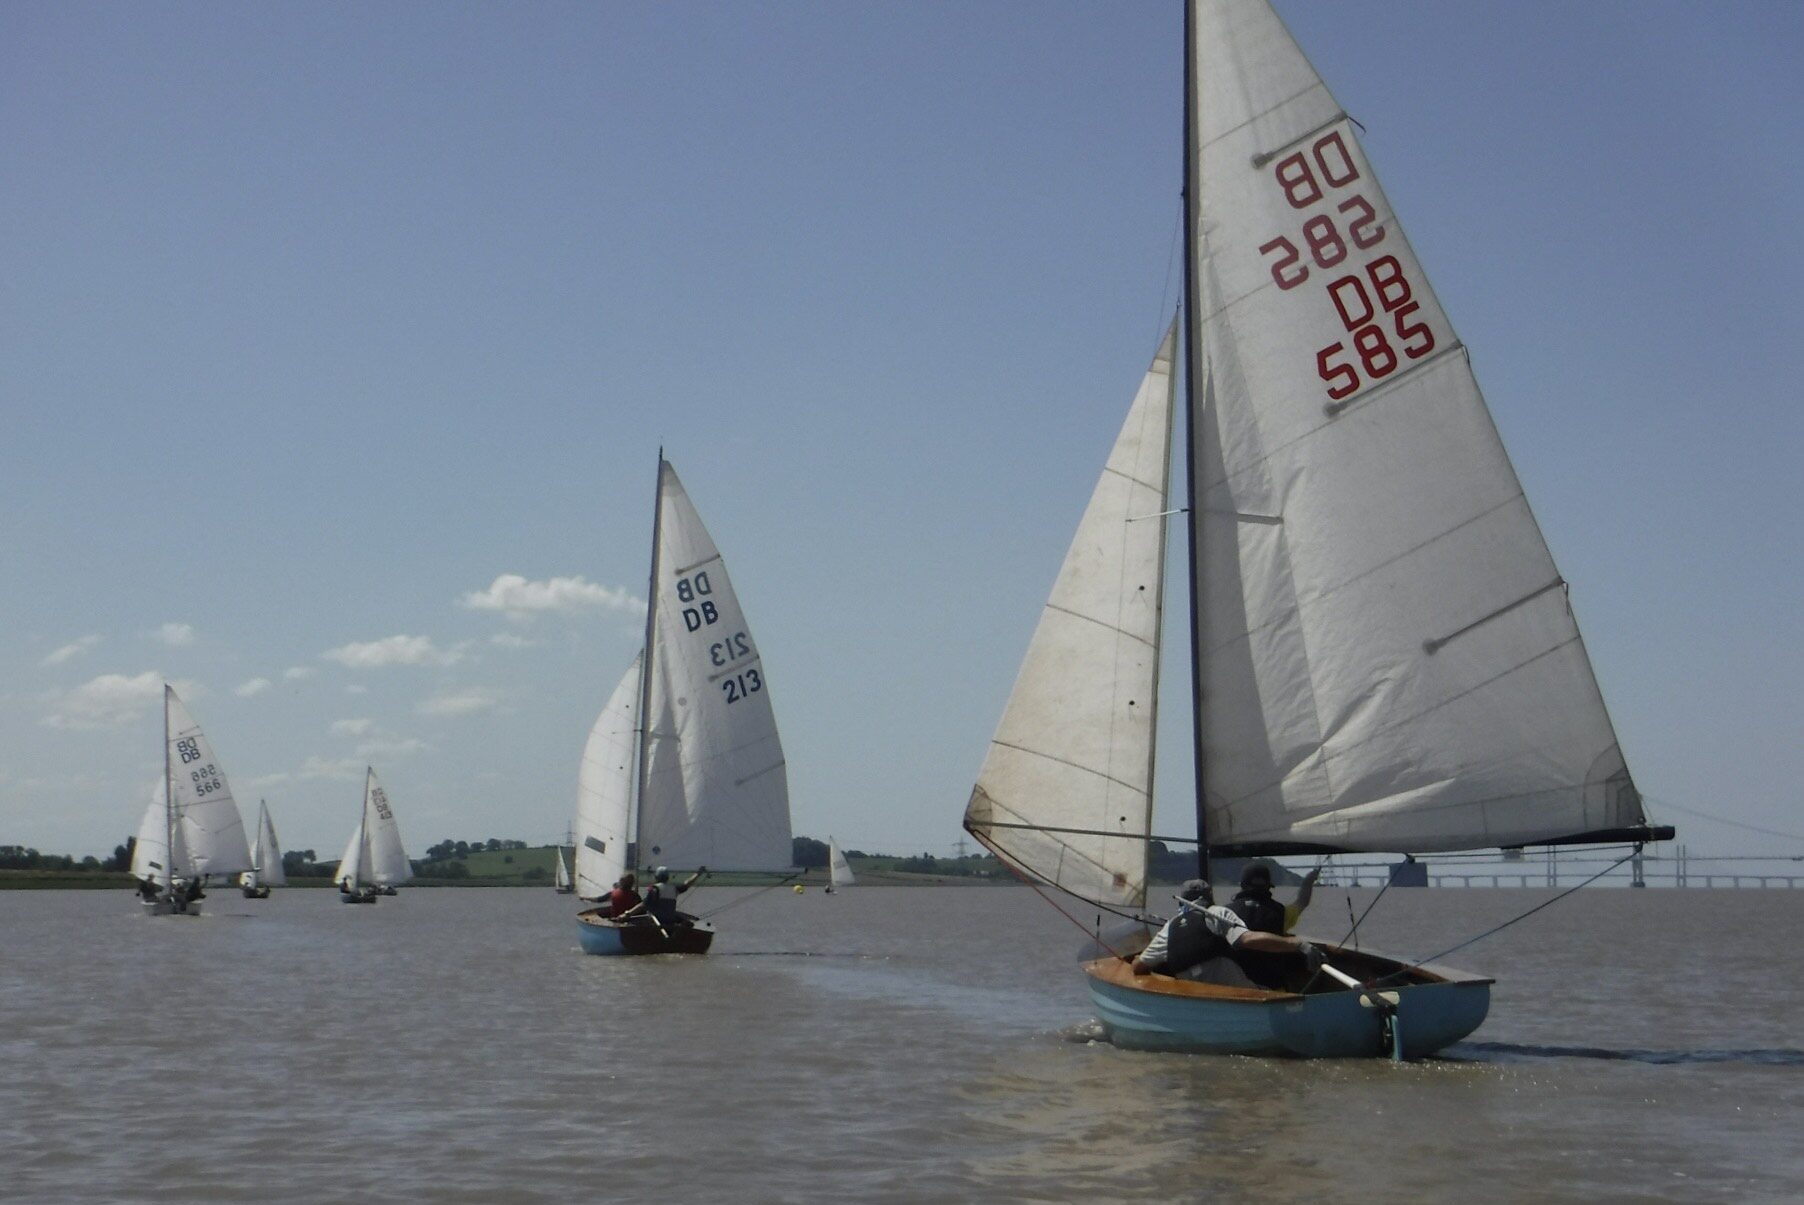 YW Dayboats racing at Thornbury Sailing Club